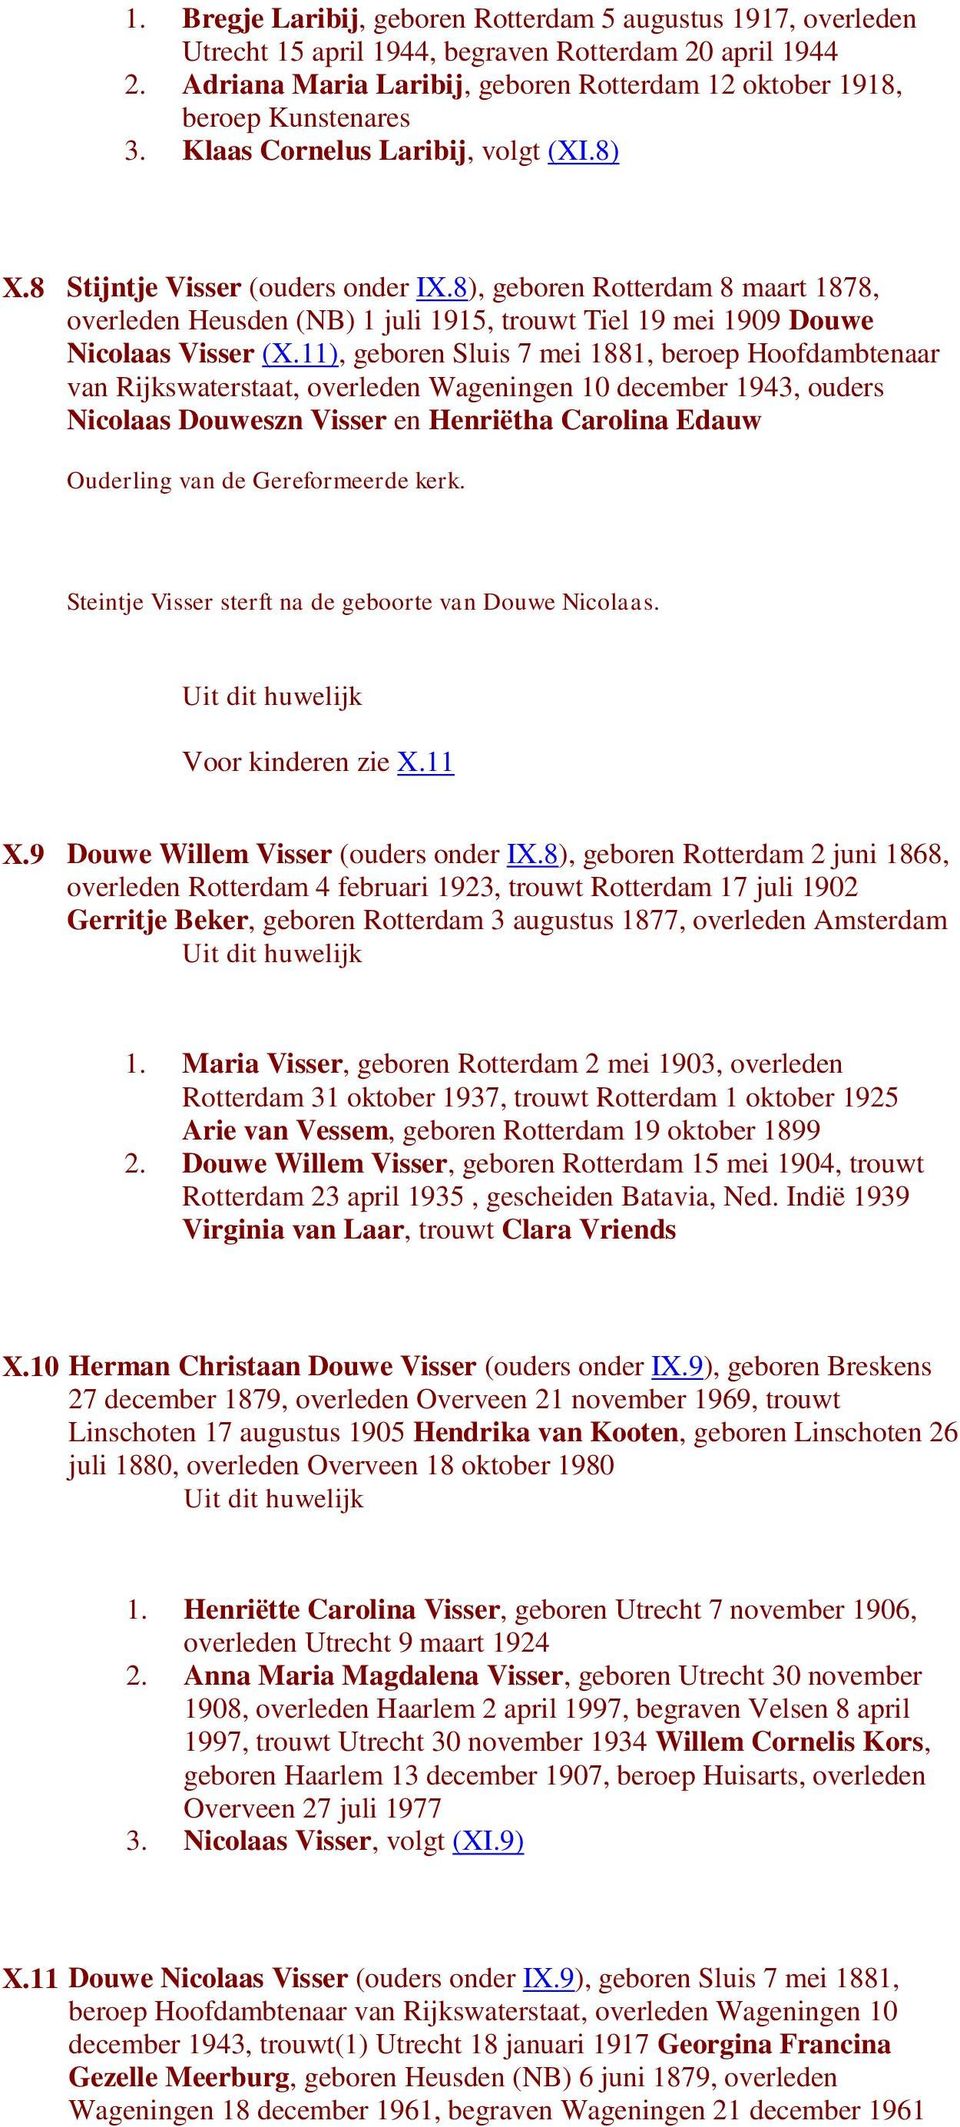 8), geboren Rotterdam 8 maart 1878, overleden Heusden (NB) 1 juli 1915, trouwt Tiel 19 mei 1909 Douwe Nicolaas Visser (X.